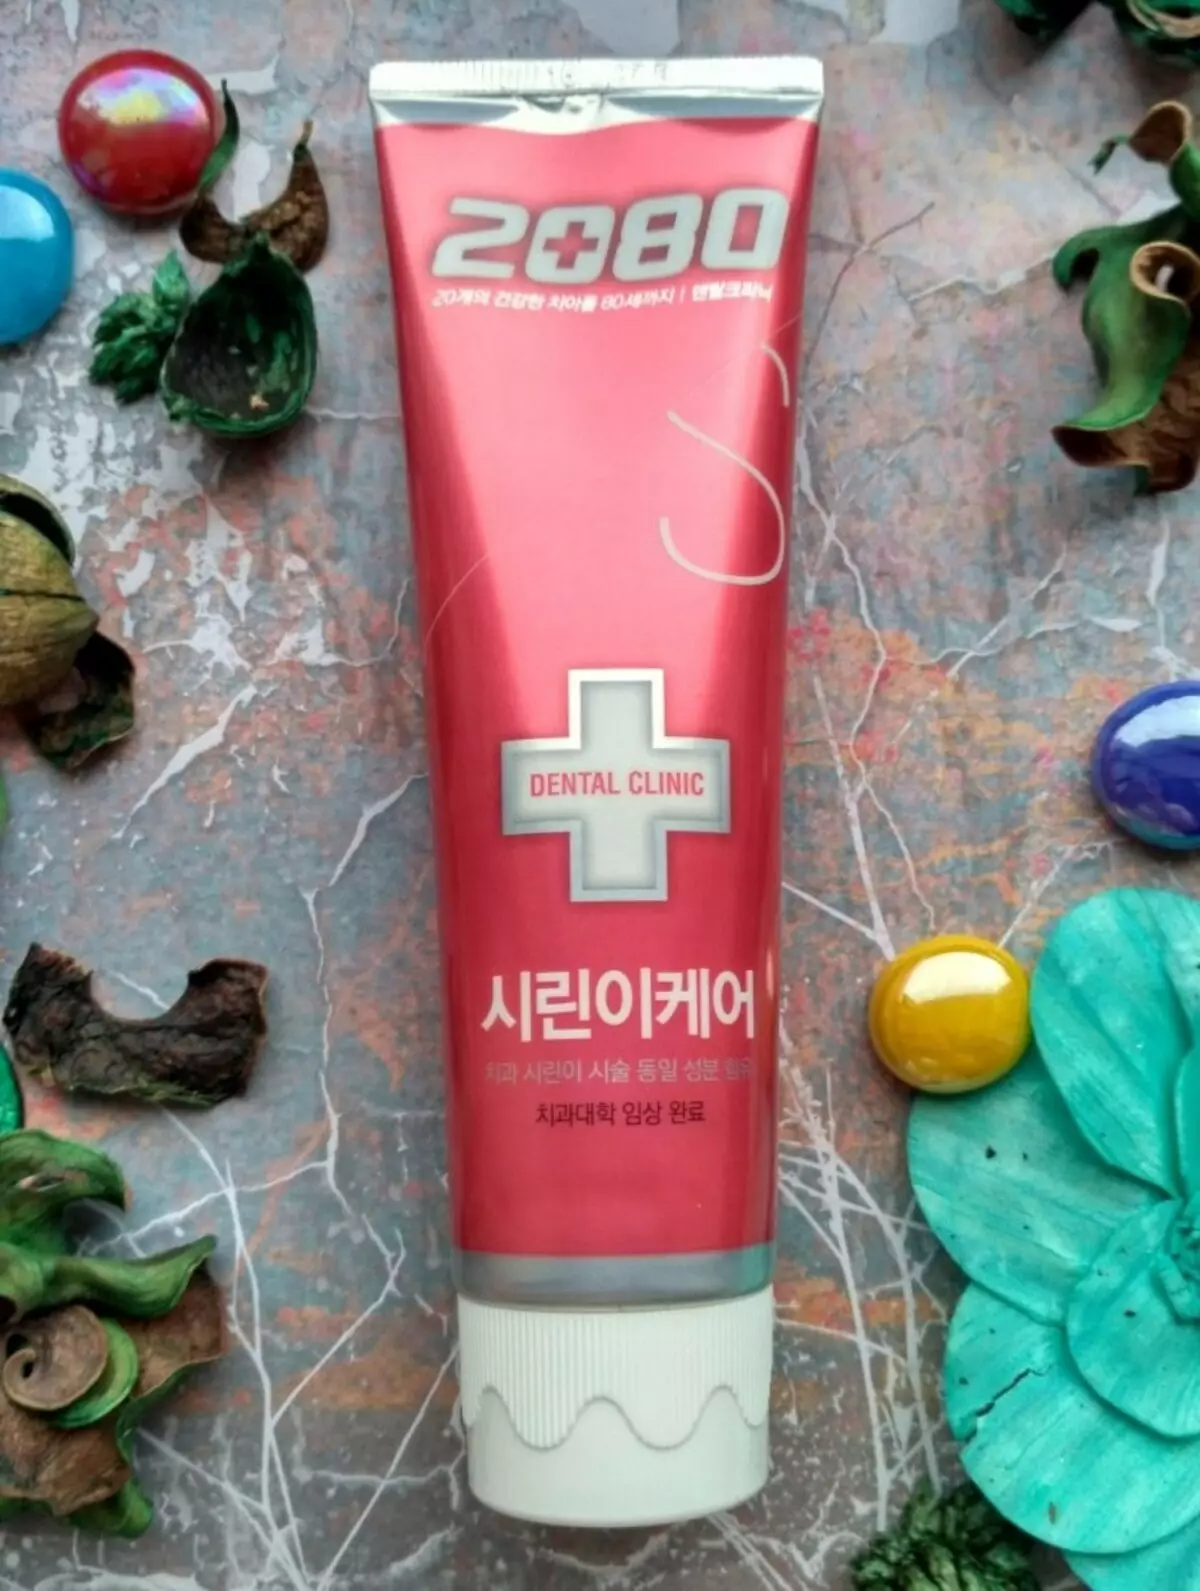 Zahnpaste Dental Klinik 2080: Pro max vun Korea a Whitening Paste, blénken wäiss a géint Steen, Kanner an aner Produkter 24050_4